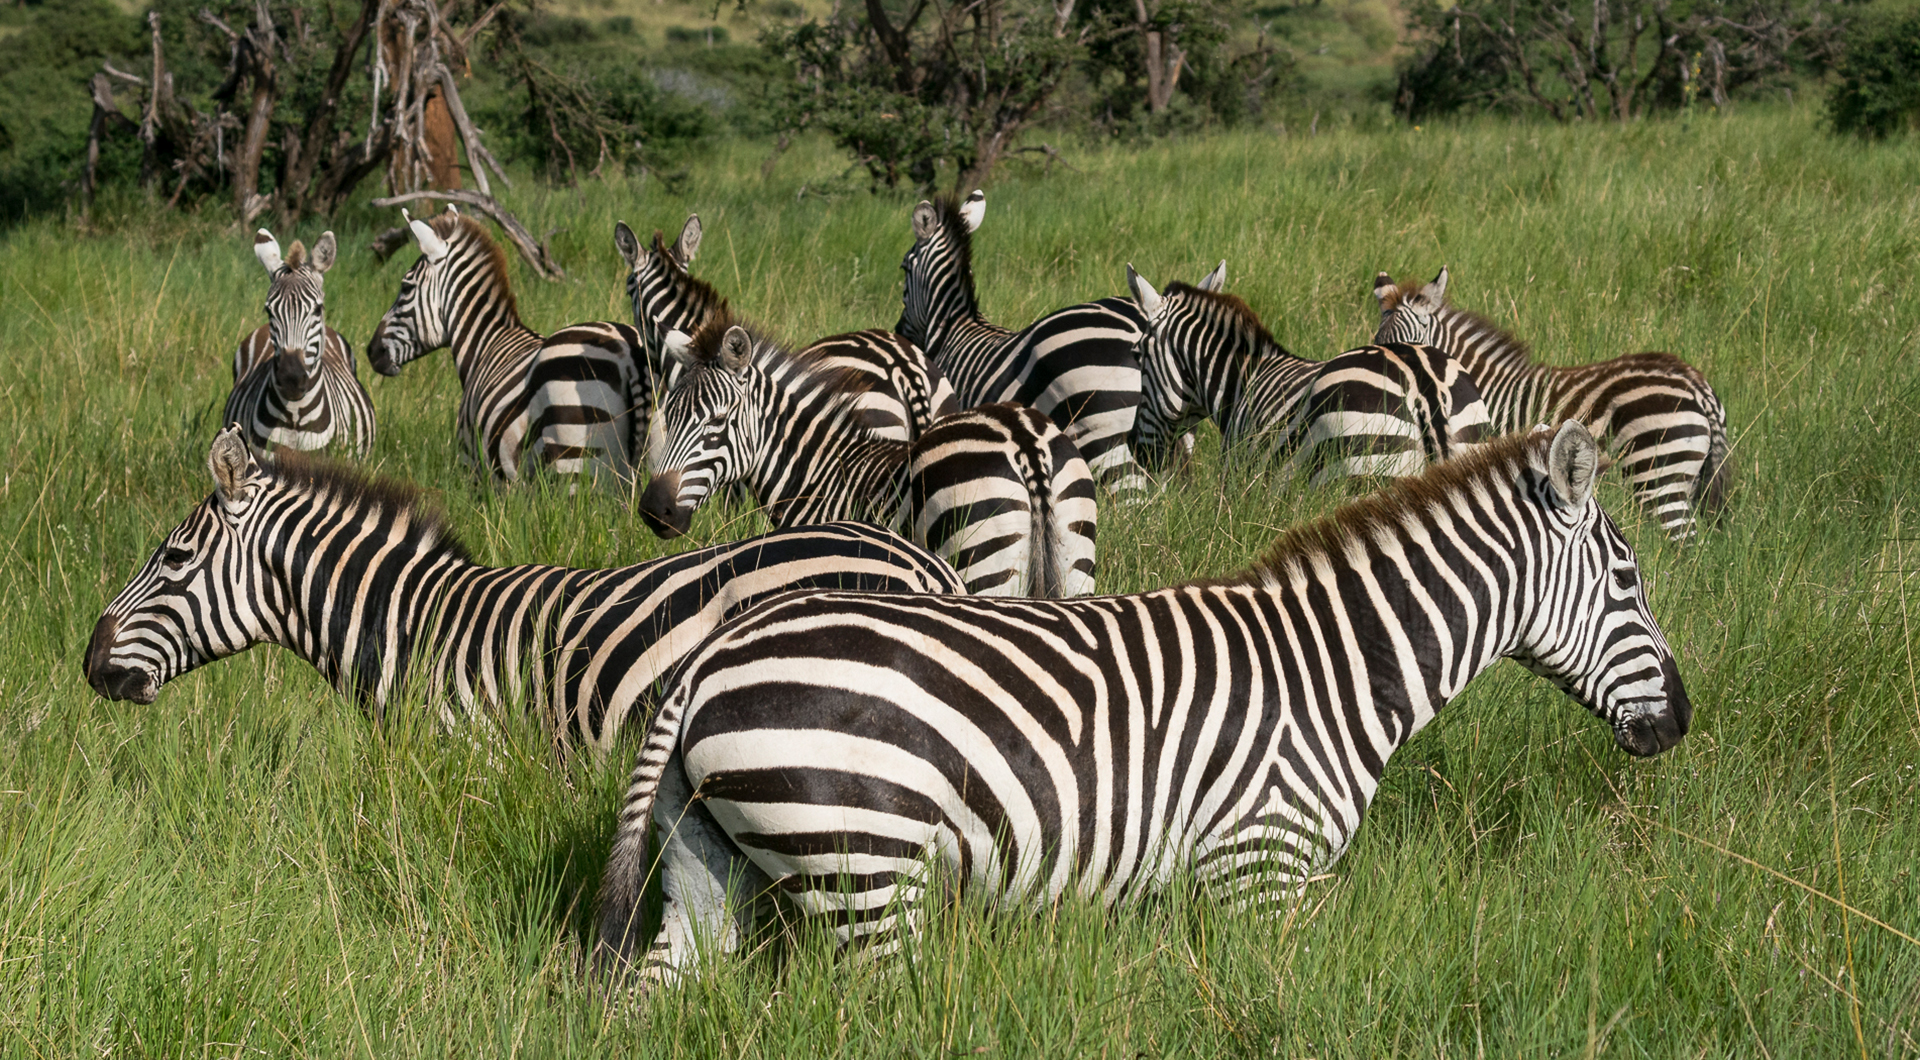 A heard of zebras standing in tall grass